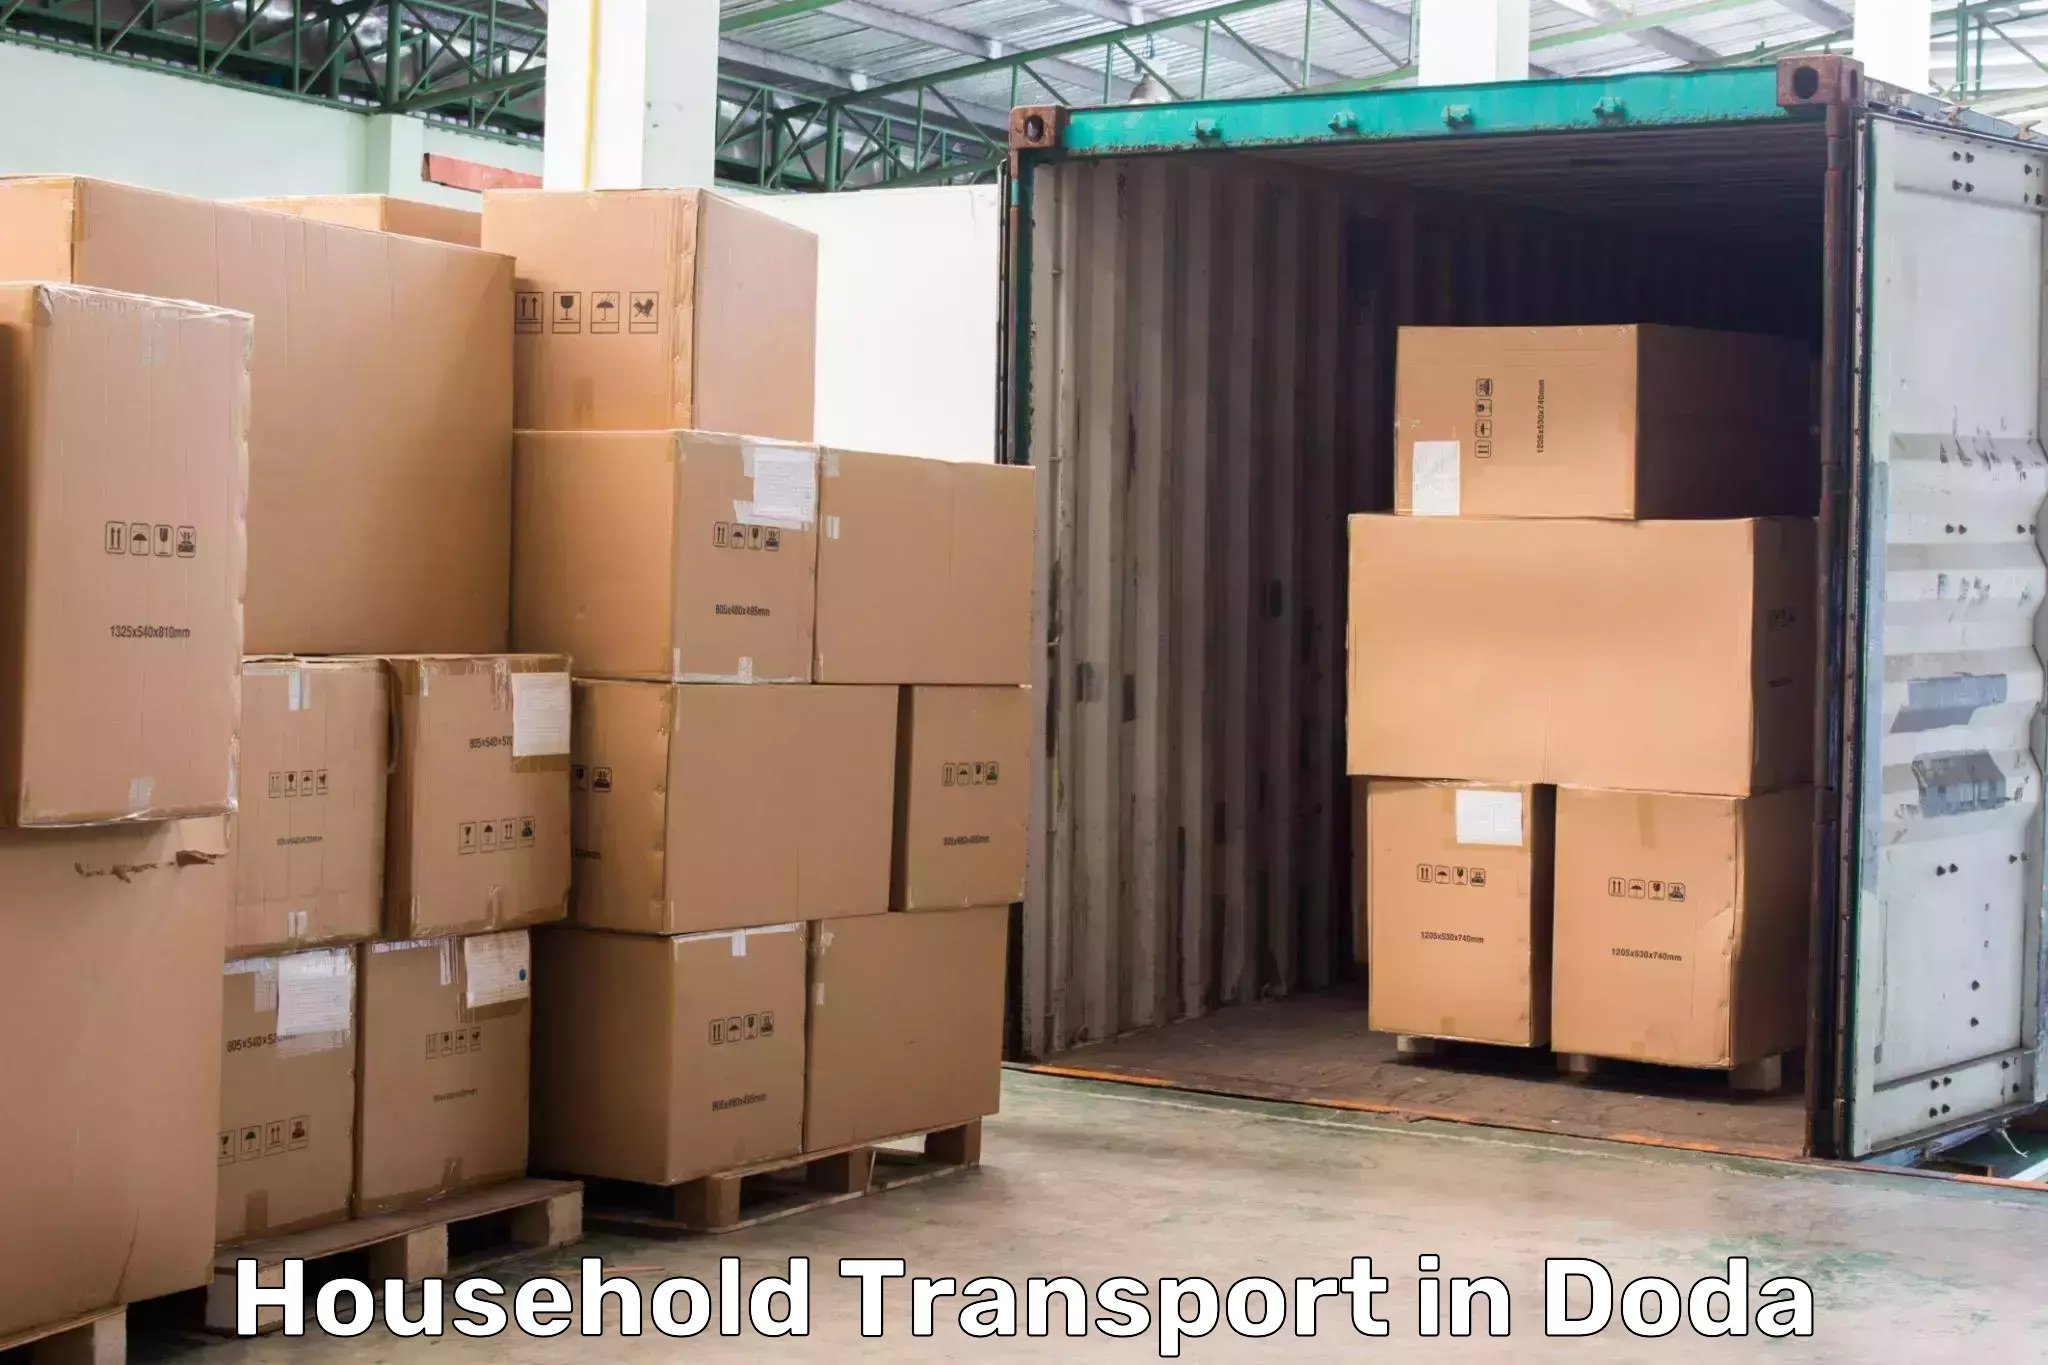 Household transport solutions in Doda